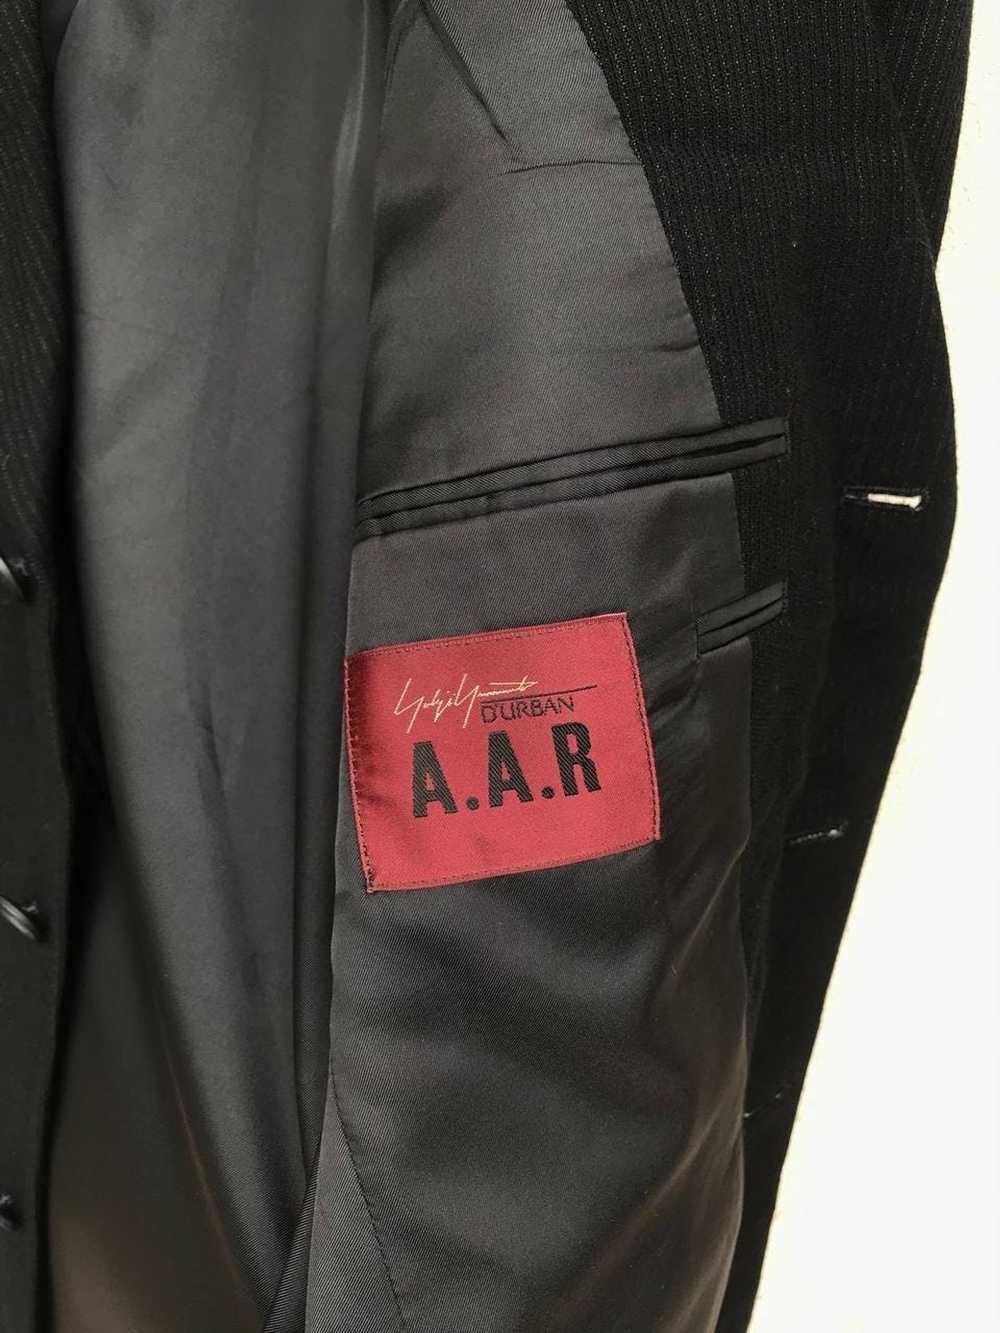 Yohji Yamamoto Yohji Yamamoto AAR jacket buttom - image 6